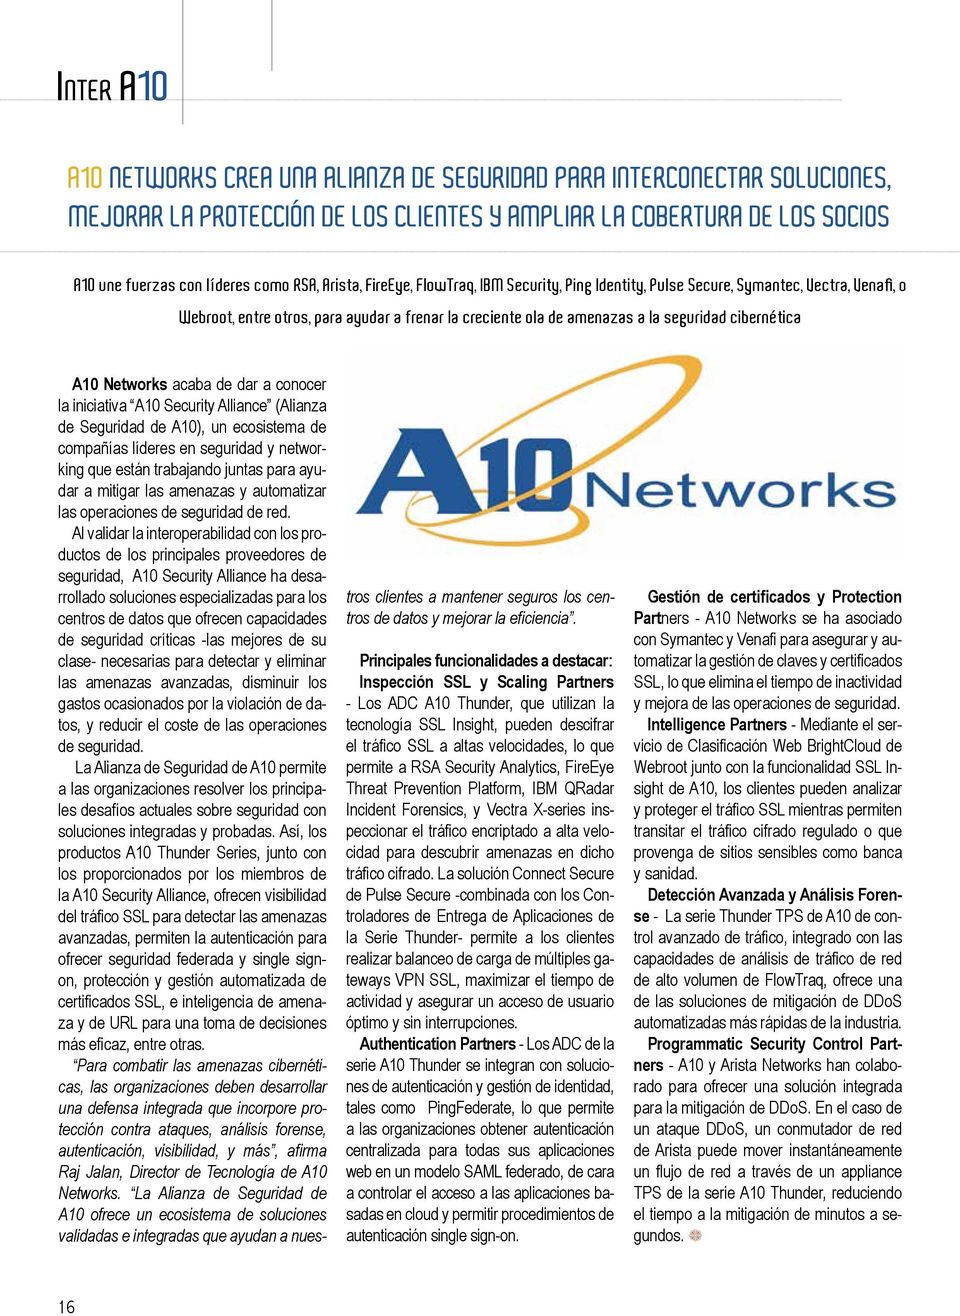 A10 Networks acaba de dar a conocer la iniciativa A10 Security Alliance (Alianza de Seguridad de A10), un ecosistema de compañías líderes en seguridad y networking que están trabajando juntas para